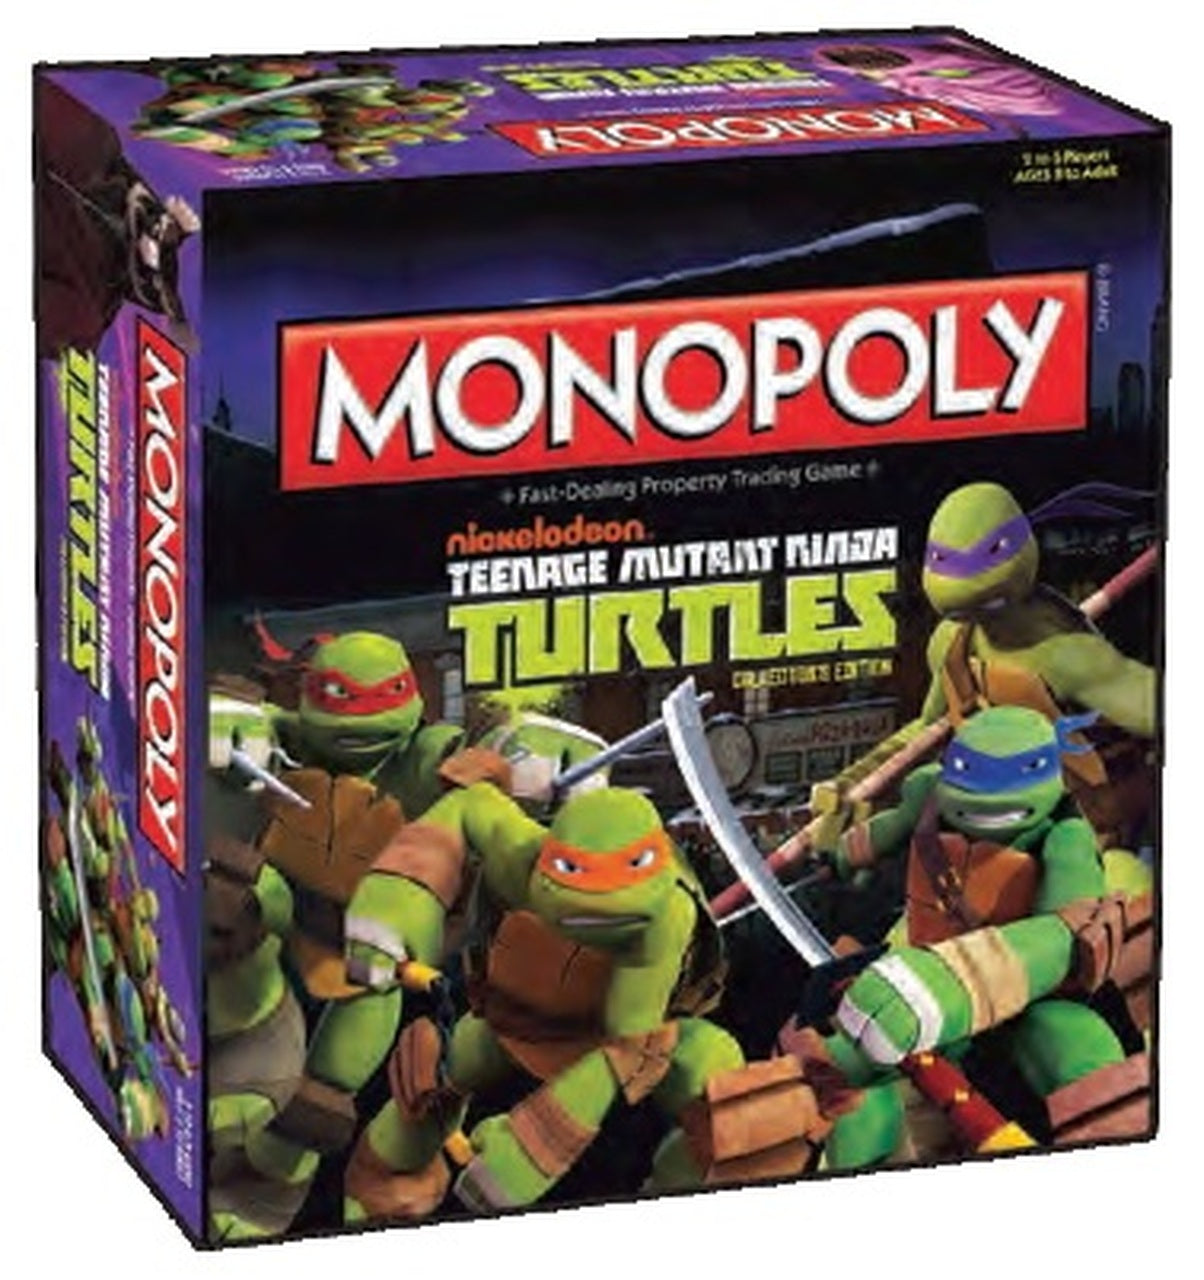 MONOPOLY Teenage Mutant Ninja Turtles Edition (New Cartoon)